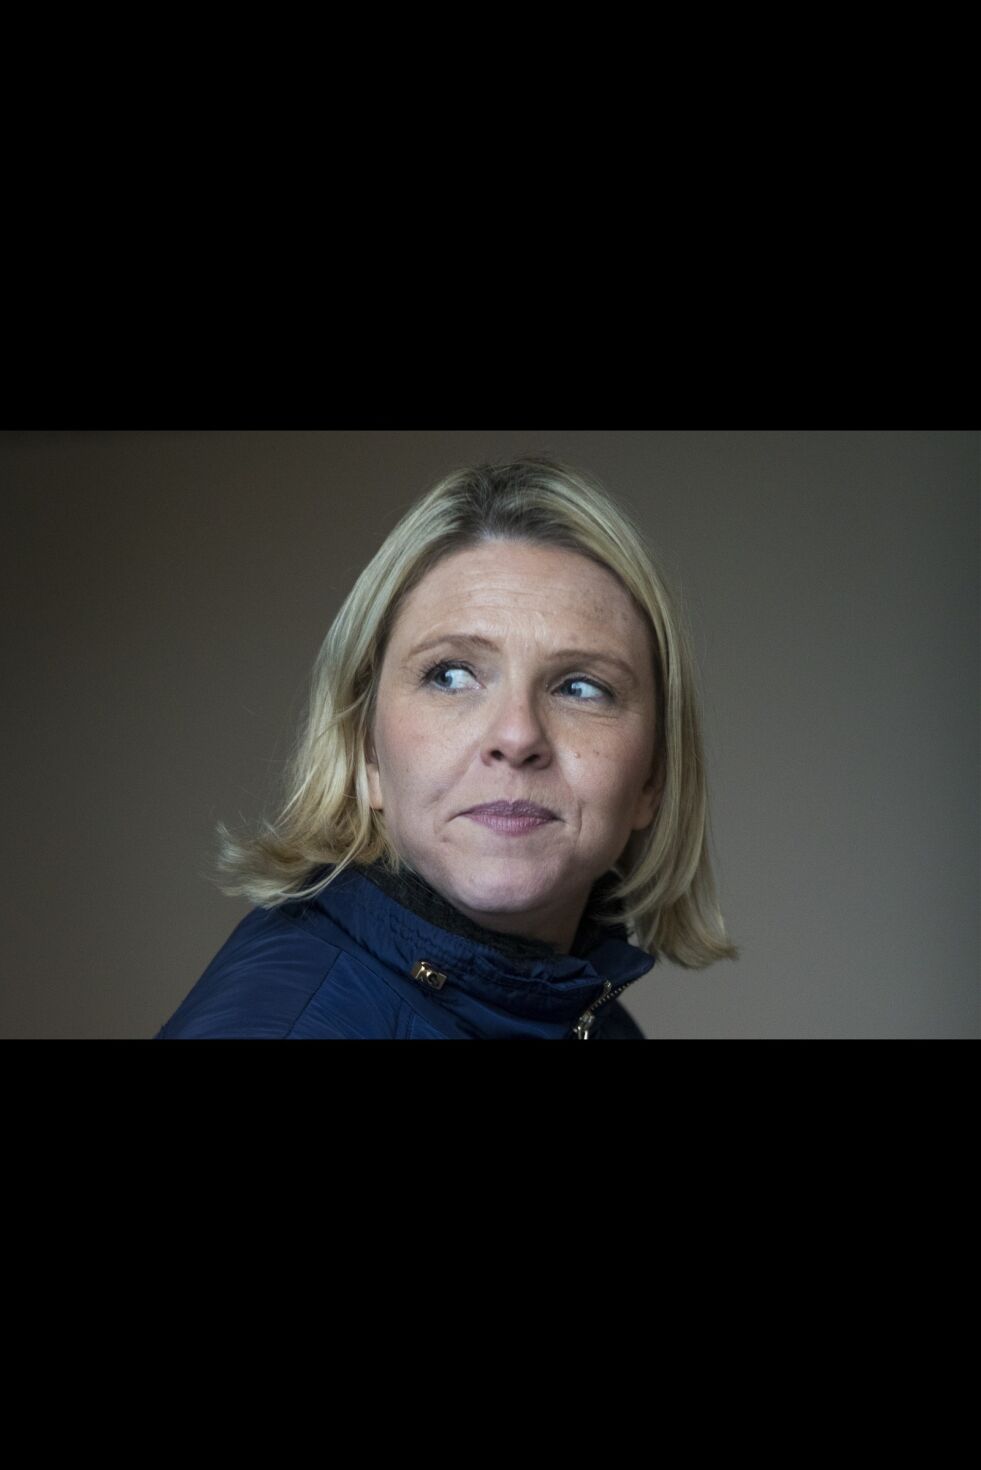 Frp-representant Sylvi Listhaug skal i likhet med partiets nestleder Ketil Solvik-Olsen holde appell i Drammen 1. mai. Foto: Heiko Junge / NTB scanpix